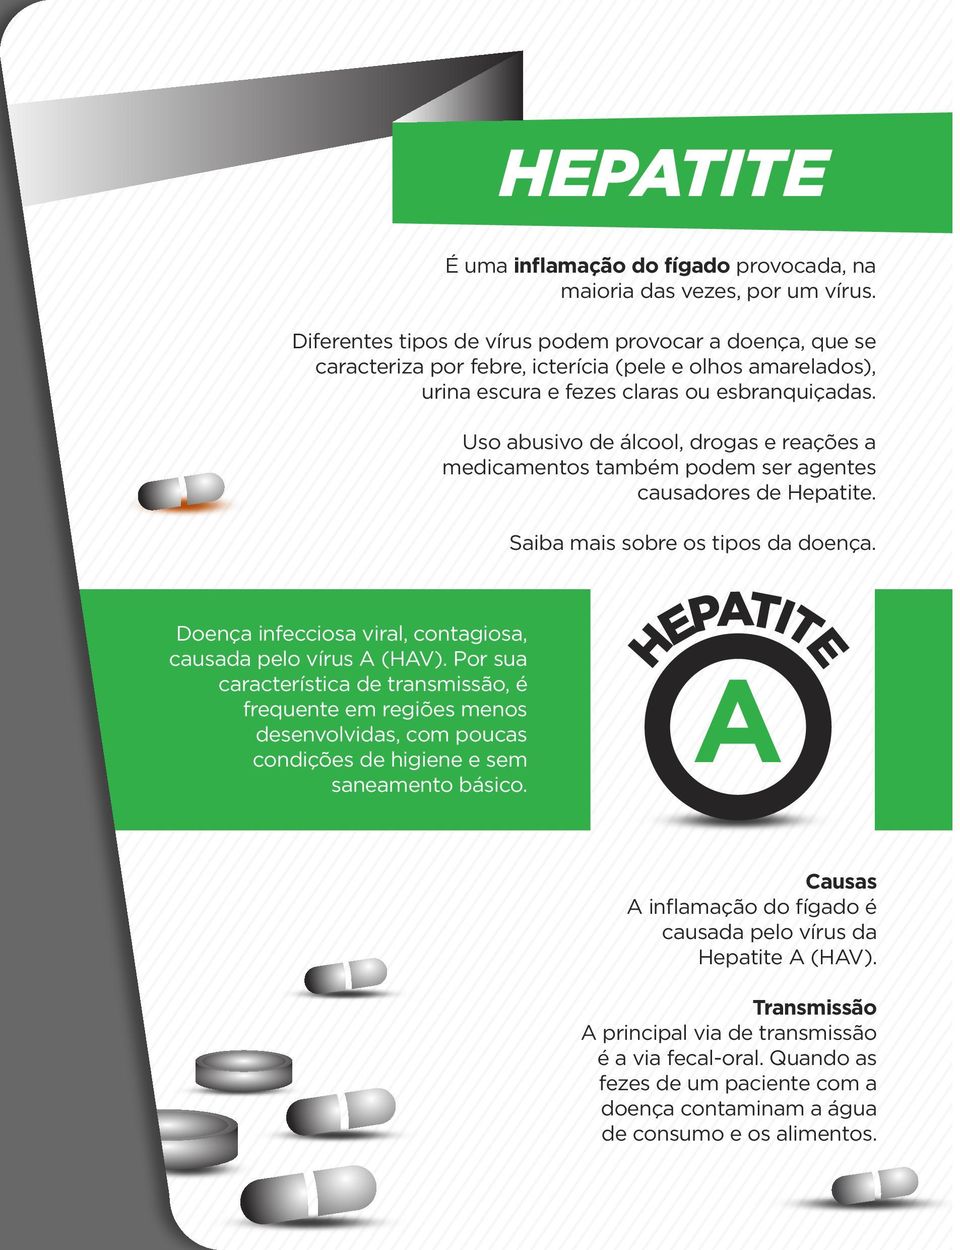 Uso abusivo de álcool, drogas e reações a medicamentos também podem ser agentes causadores de Hepatite. Saiba mais sobre os tipos da doença.